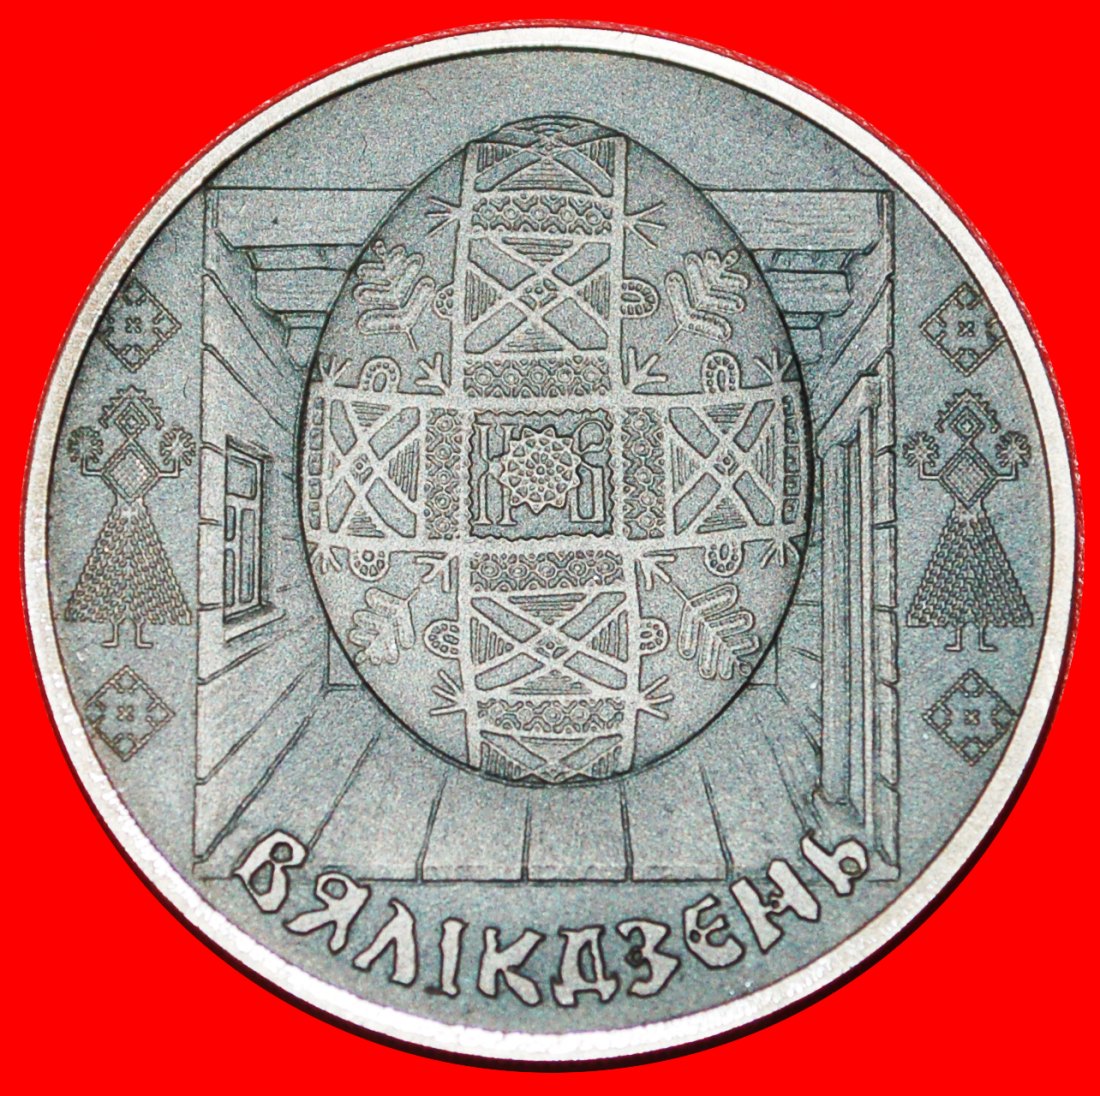  * SELTEN: weißrussland (früher die UdSSR, russland)★1 RUBEL 2005! OSTEREI ASTRONOMIE★OHNE VORBEHALT!   